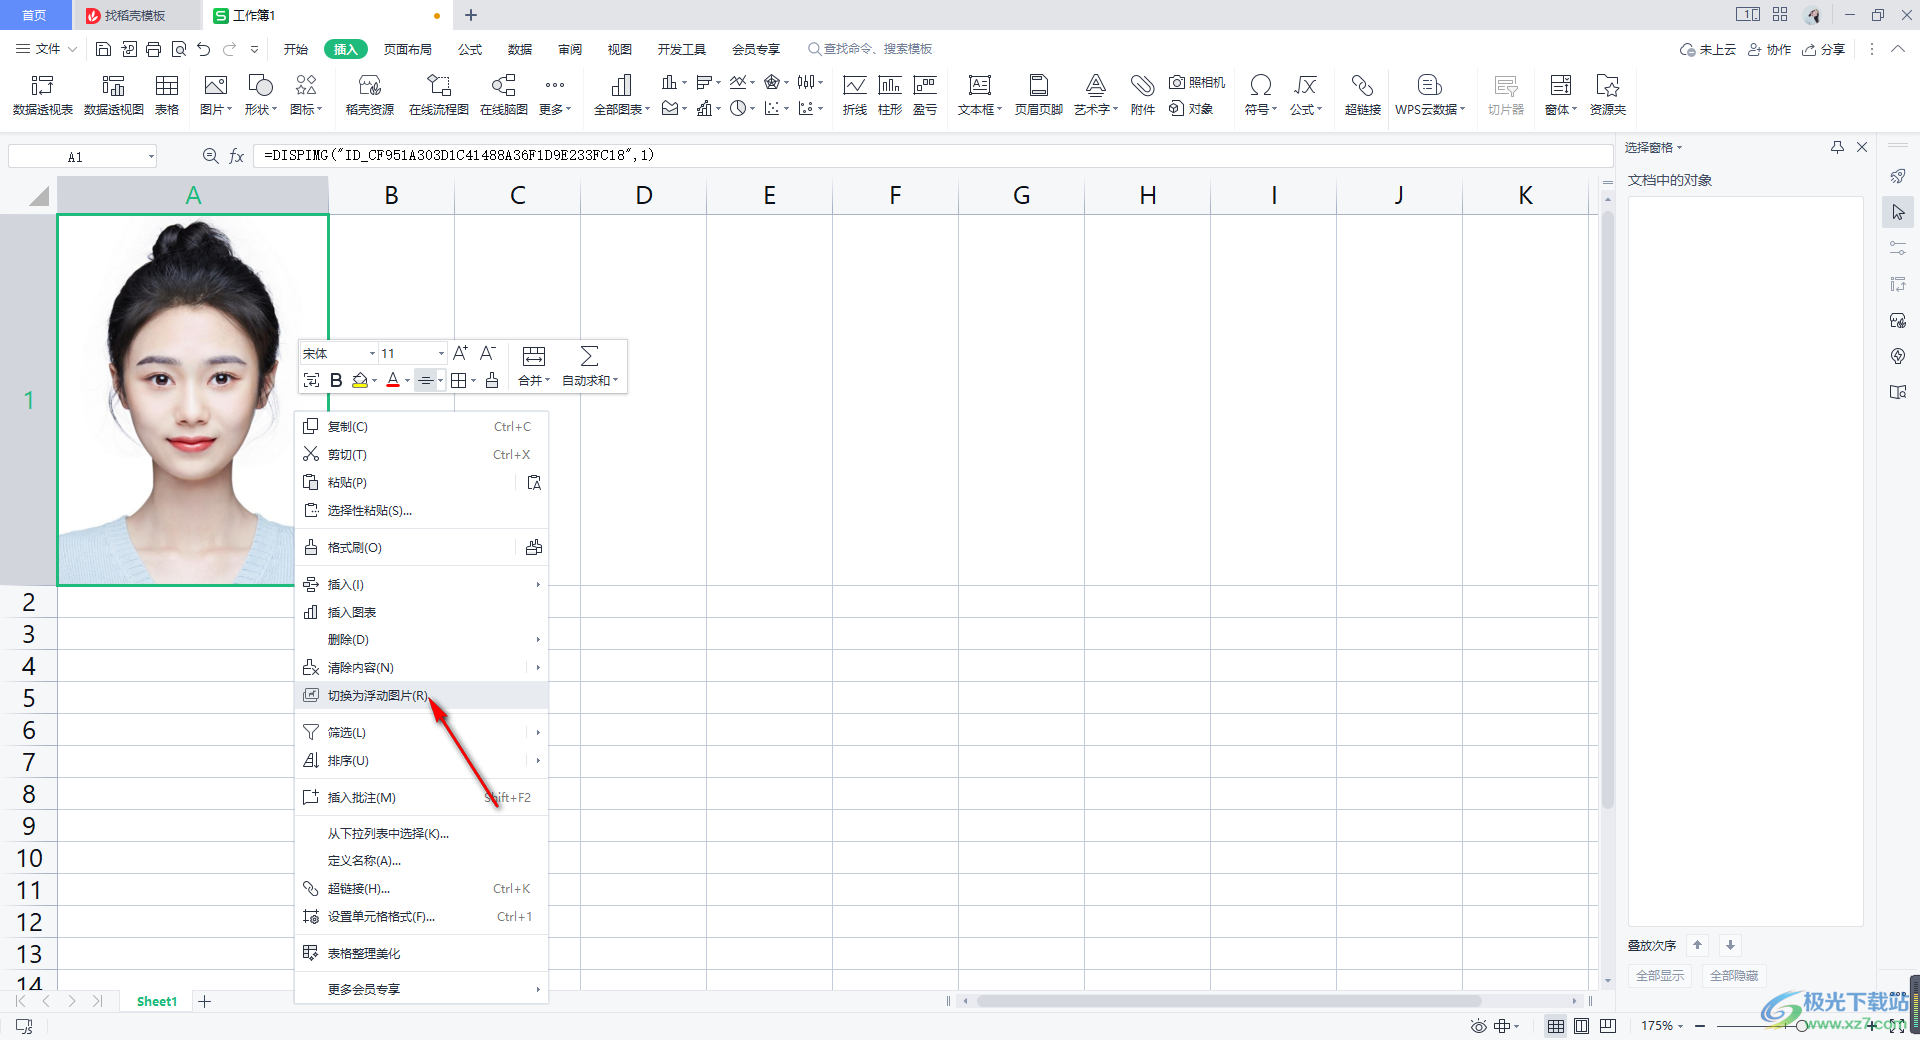 如何在Excel表格中插入图片,使其刚好填满整个单元格? - 知乎